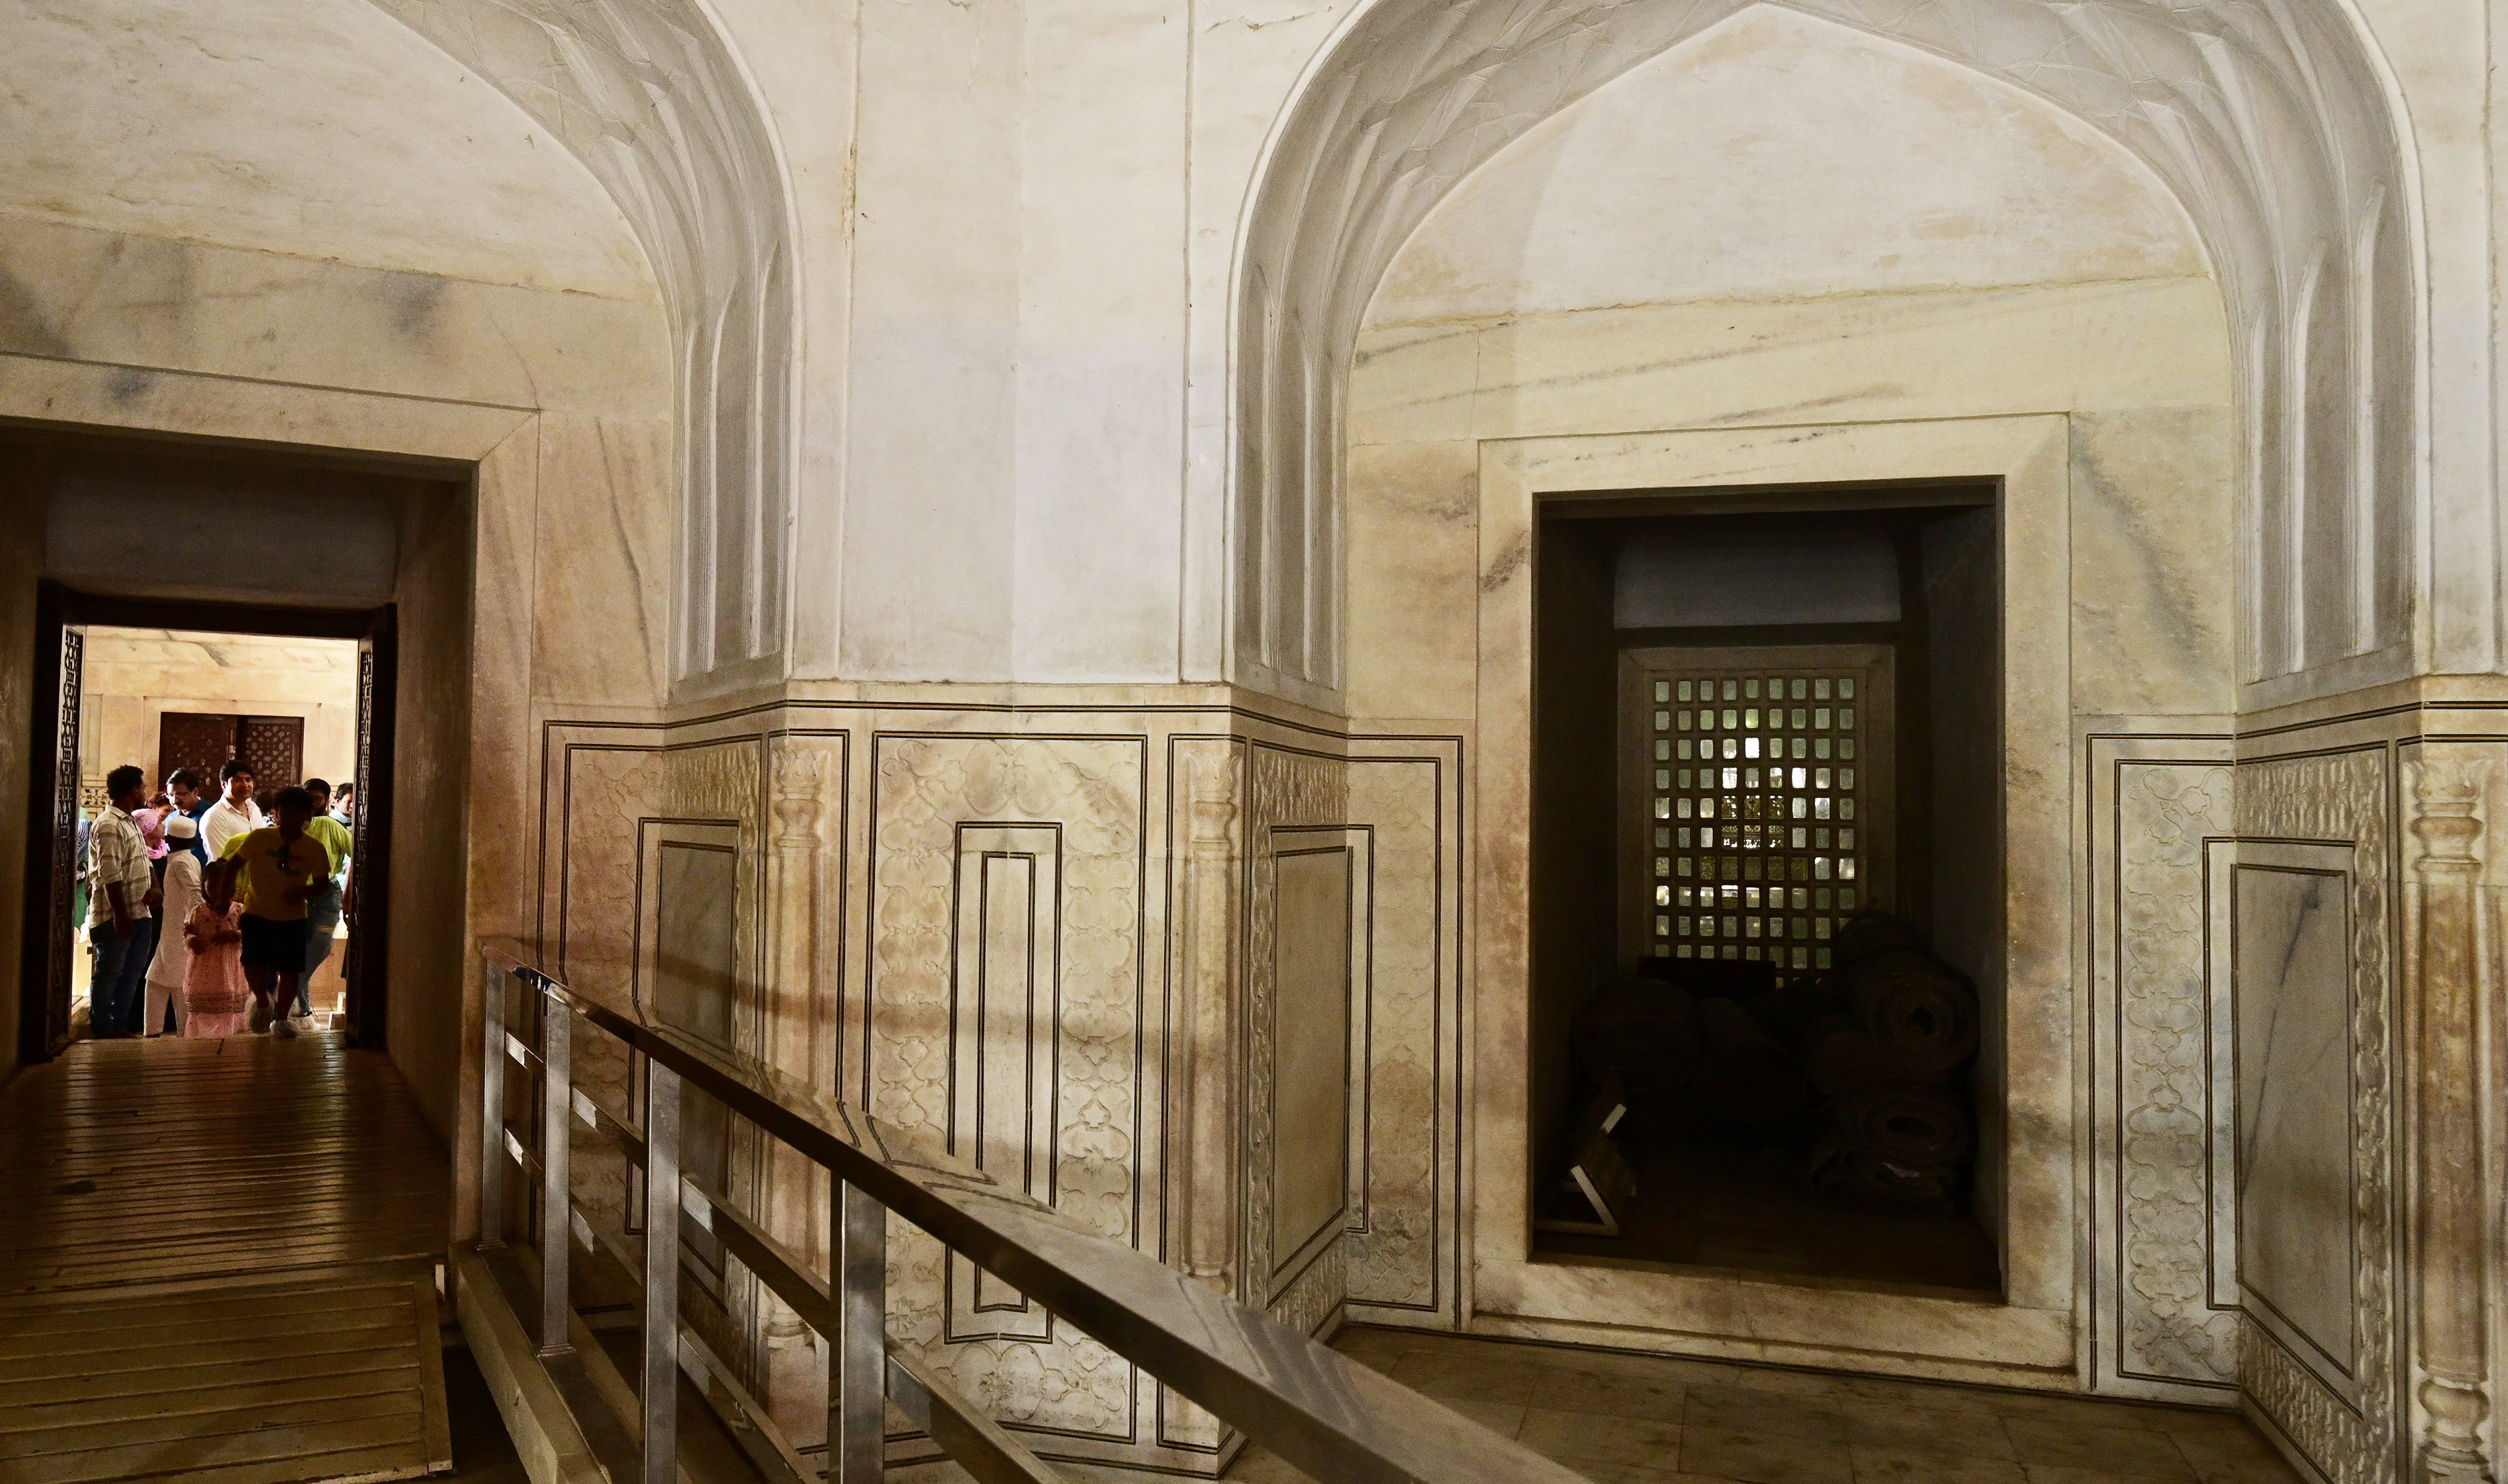 타지마할을 세운 샤 자한과 아내 뭄타즈 마할이 묻힌 영묘. 내부는 촬영 불가다.